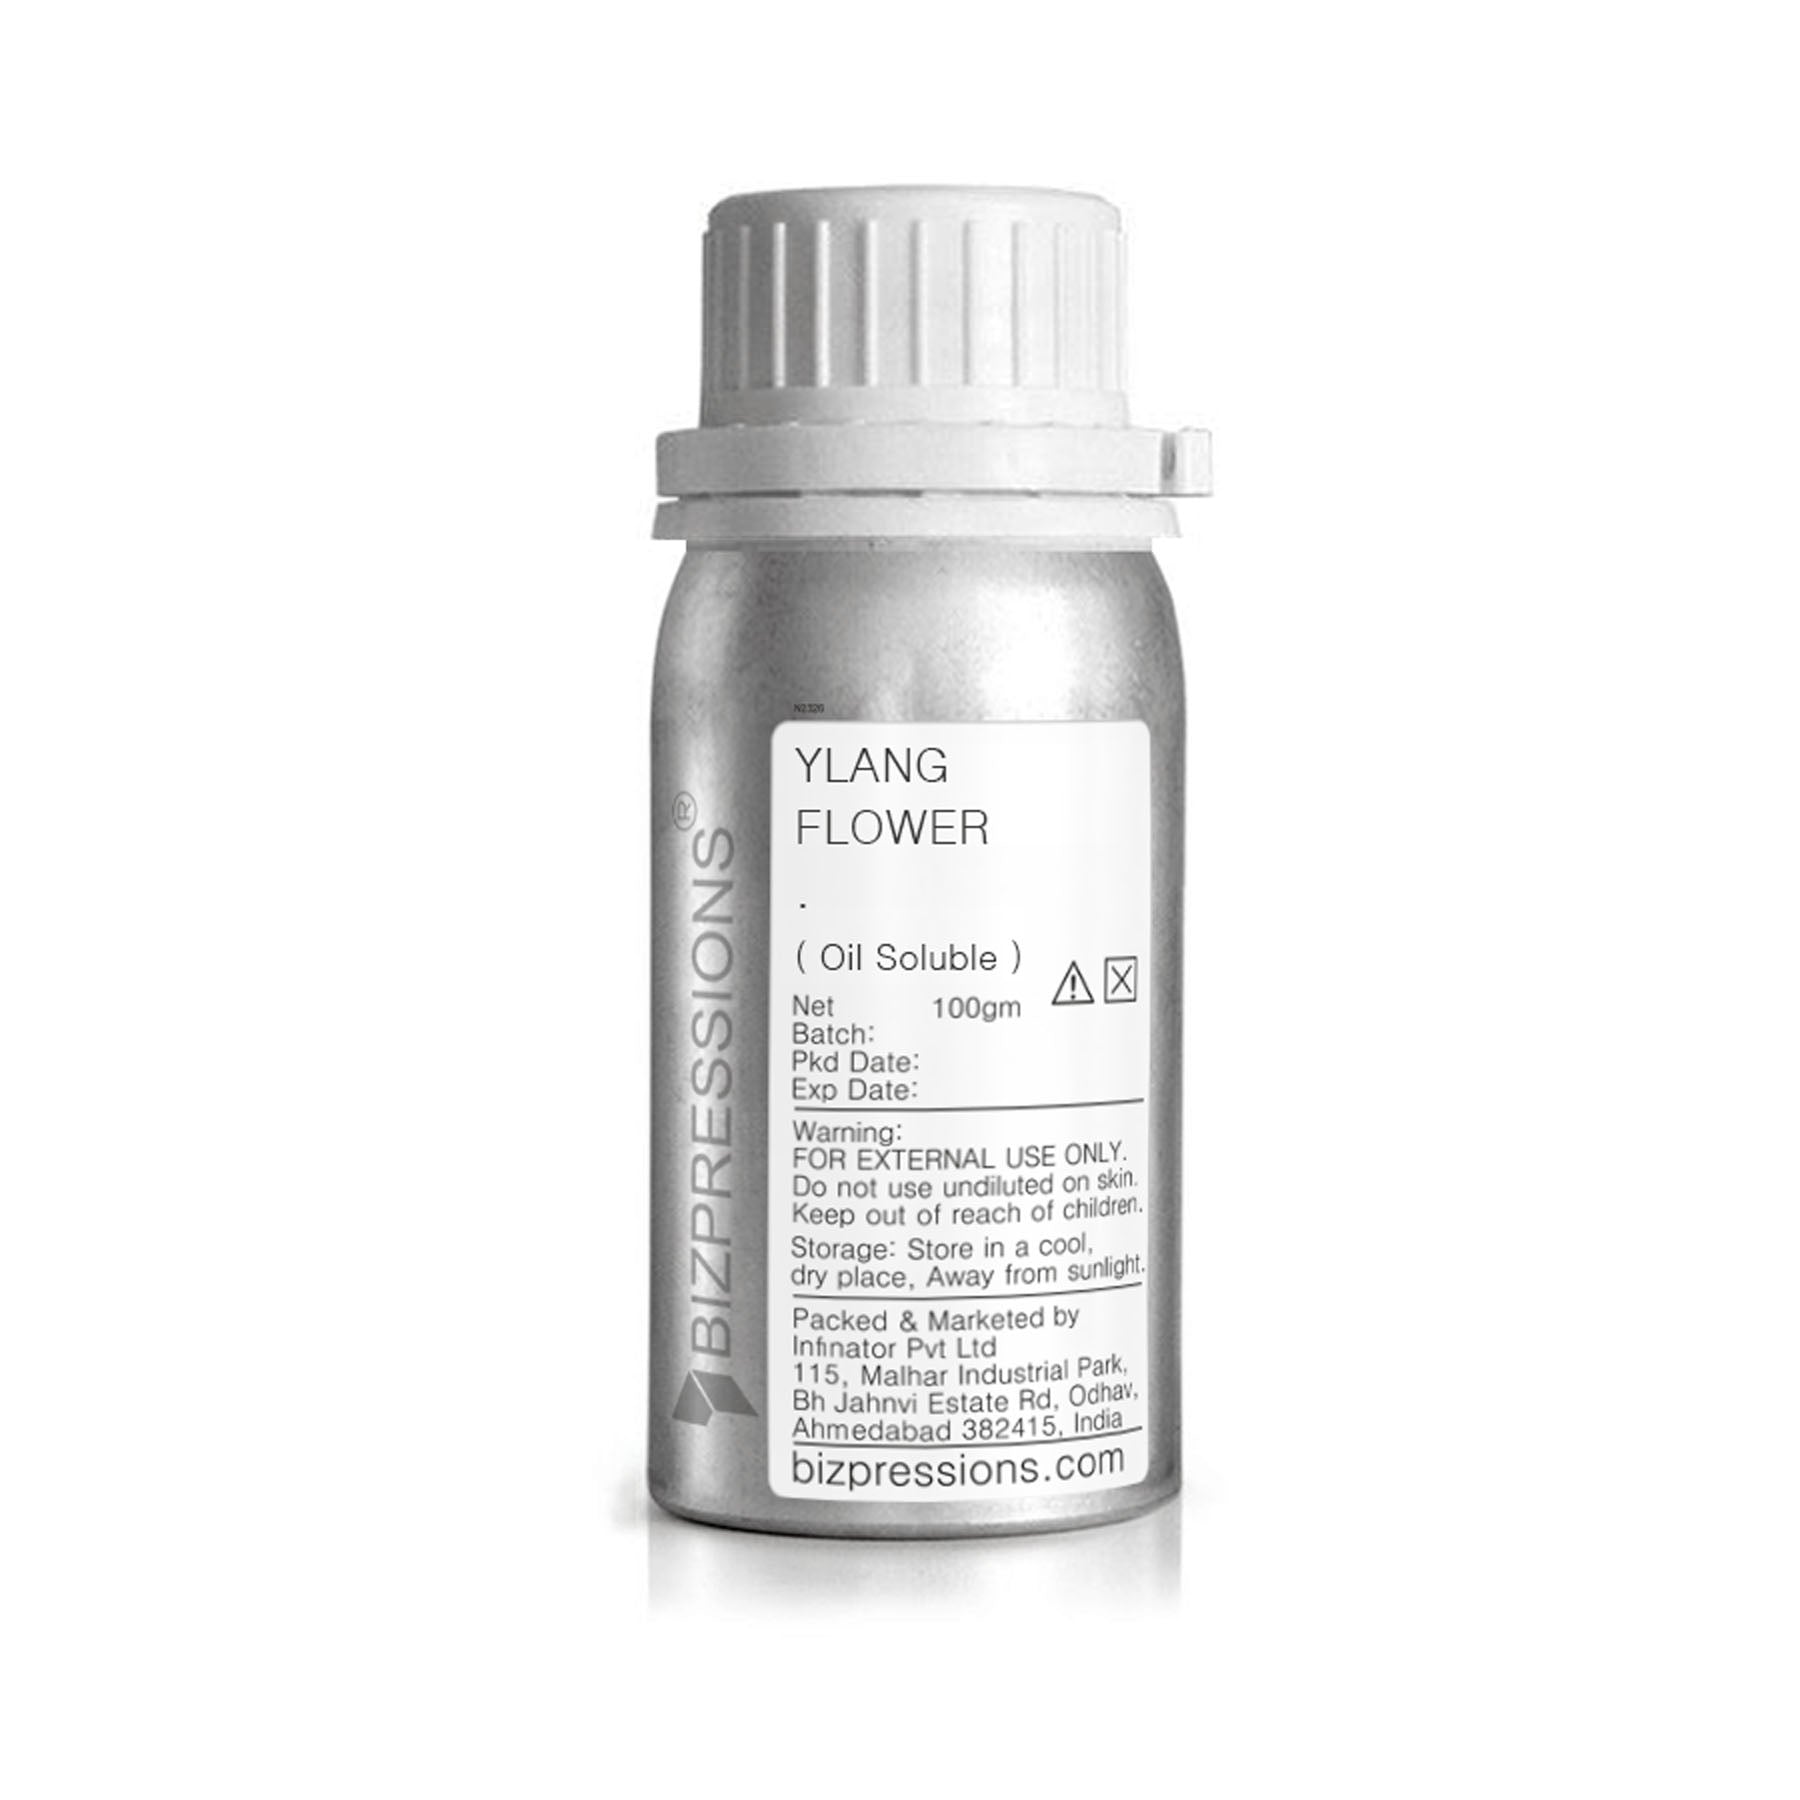 YLANG FLOWER - Fragrance ( Oil Soluble ) - 100 gm